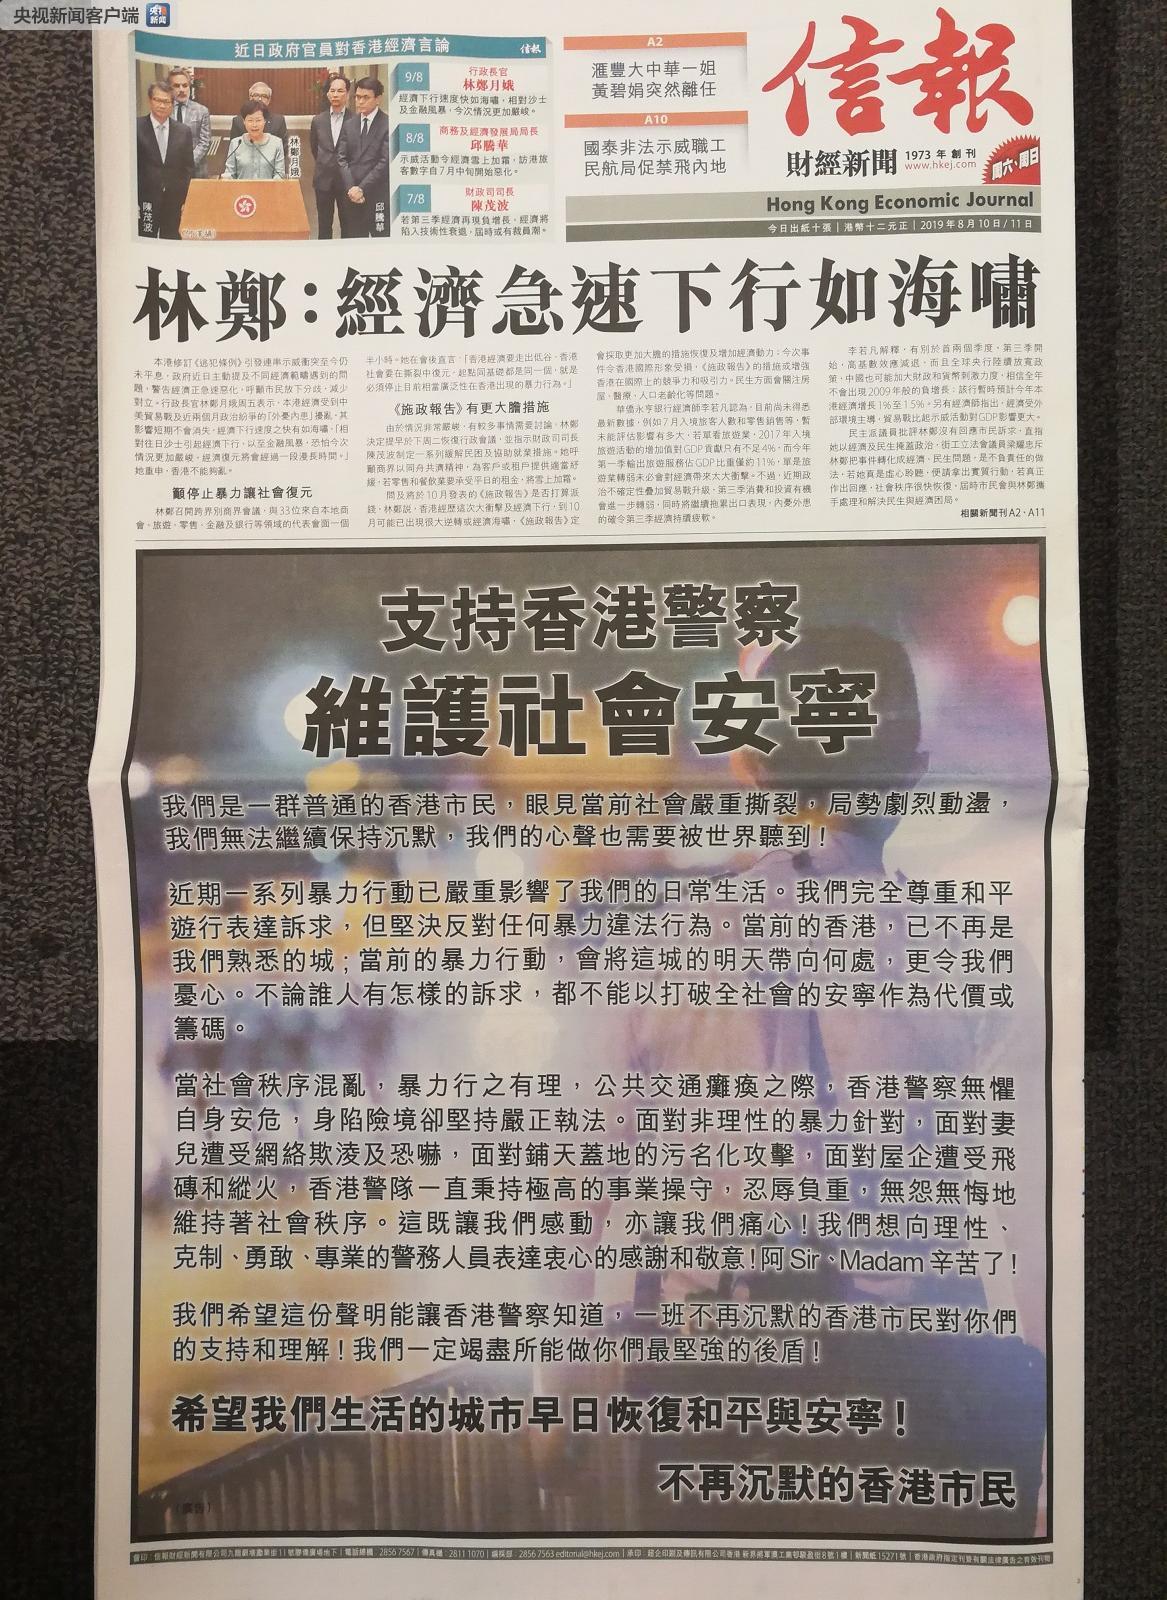 △《信报》刊登《支持香港警察 维护社会安宁》